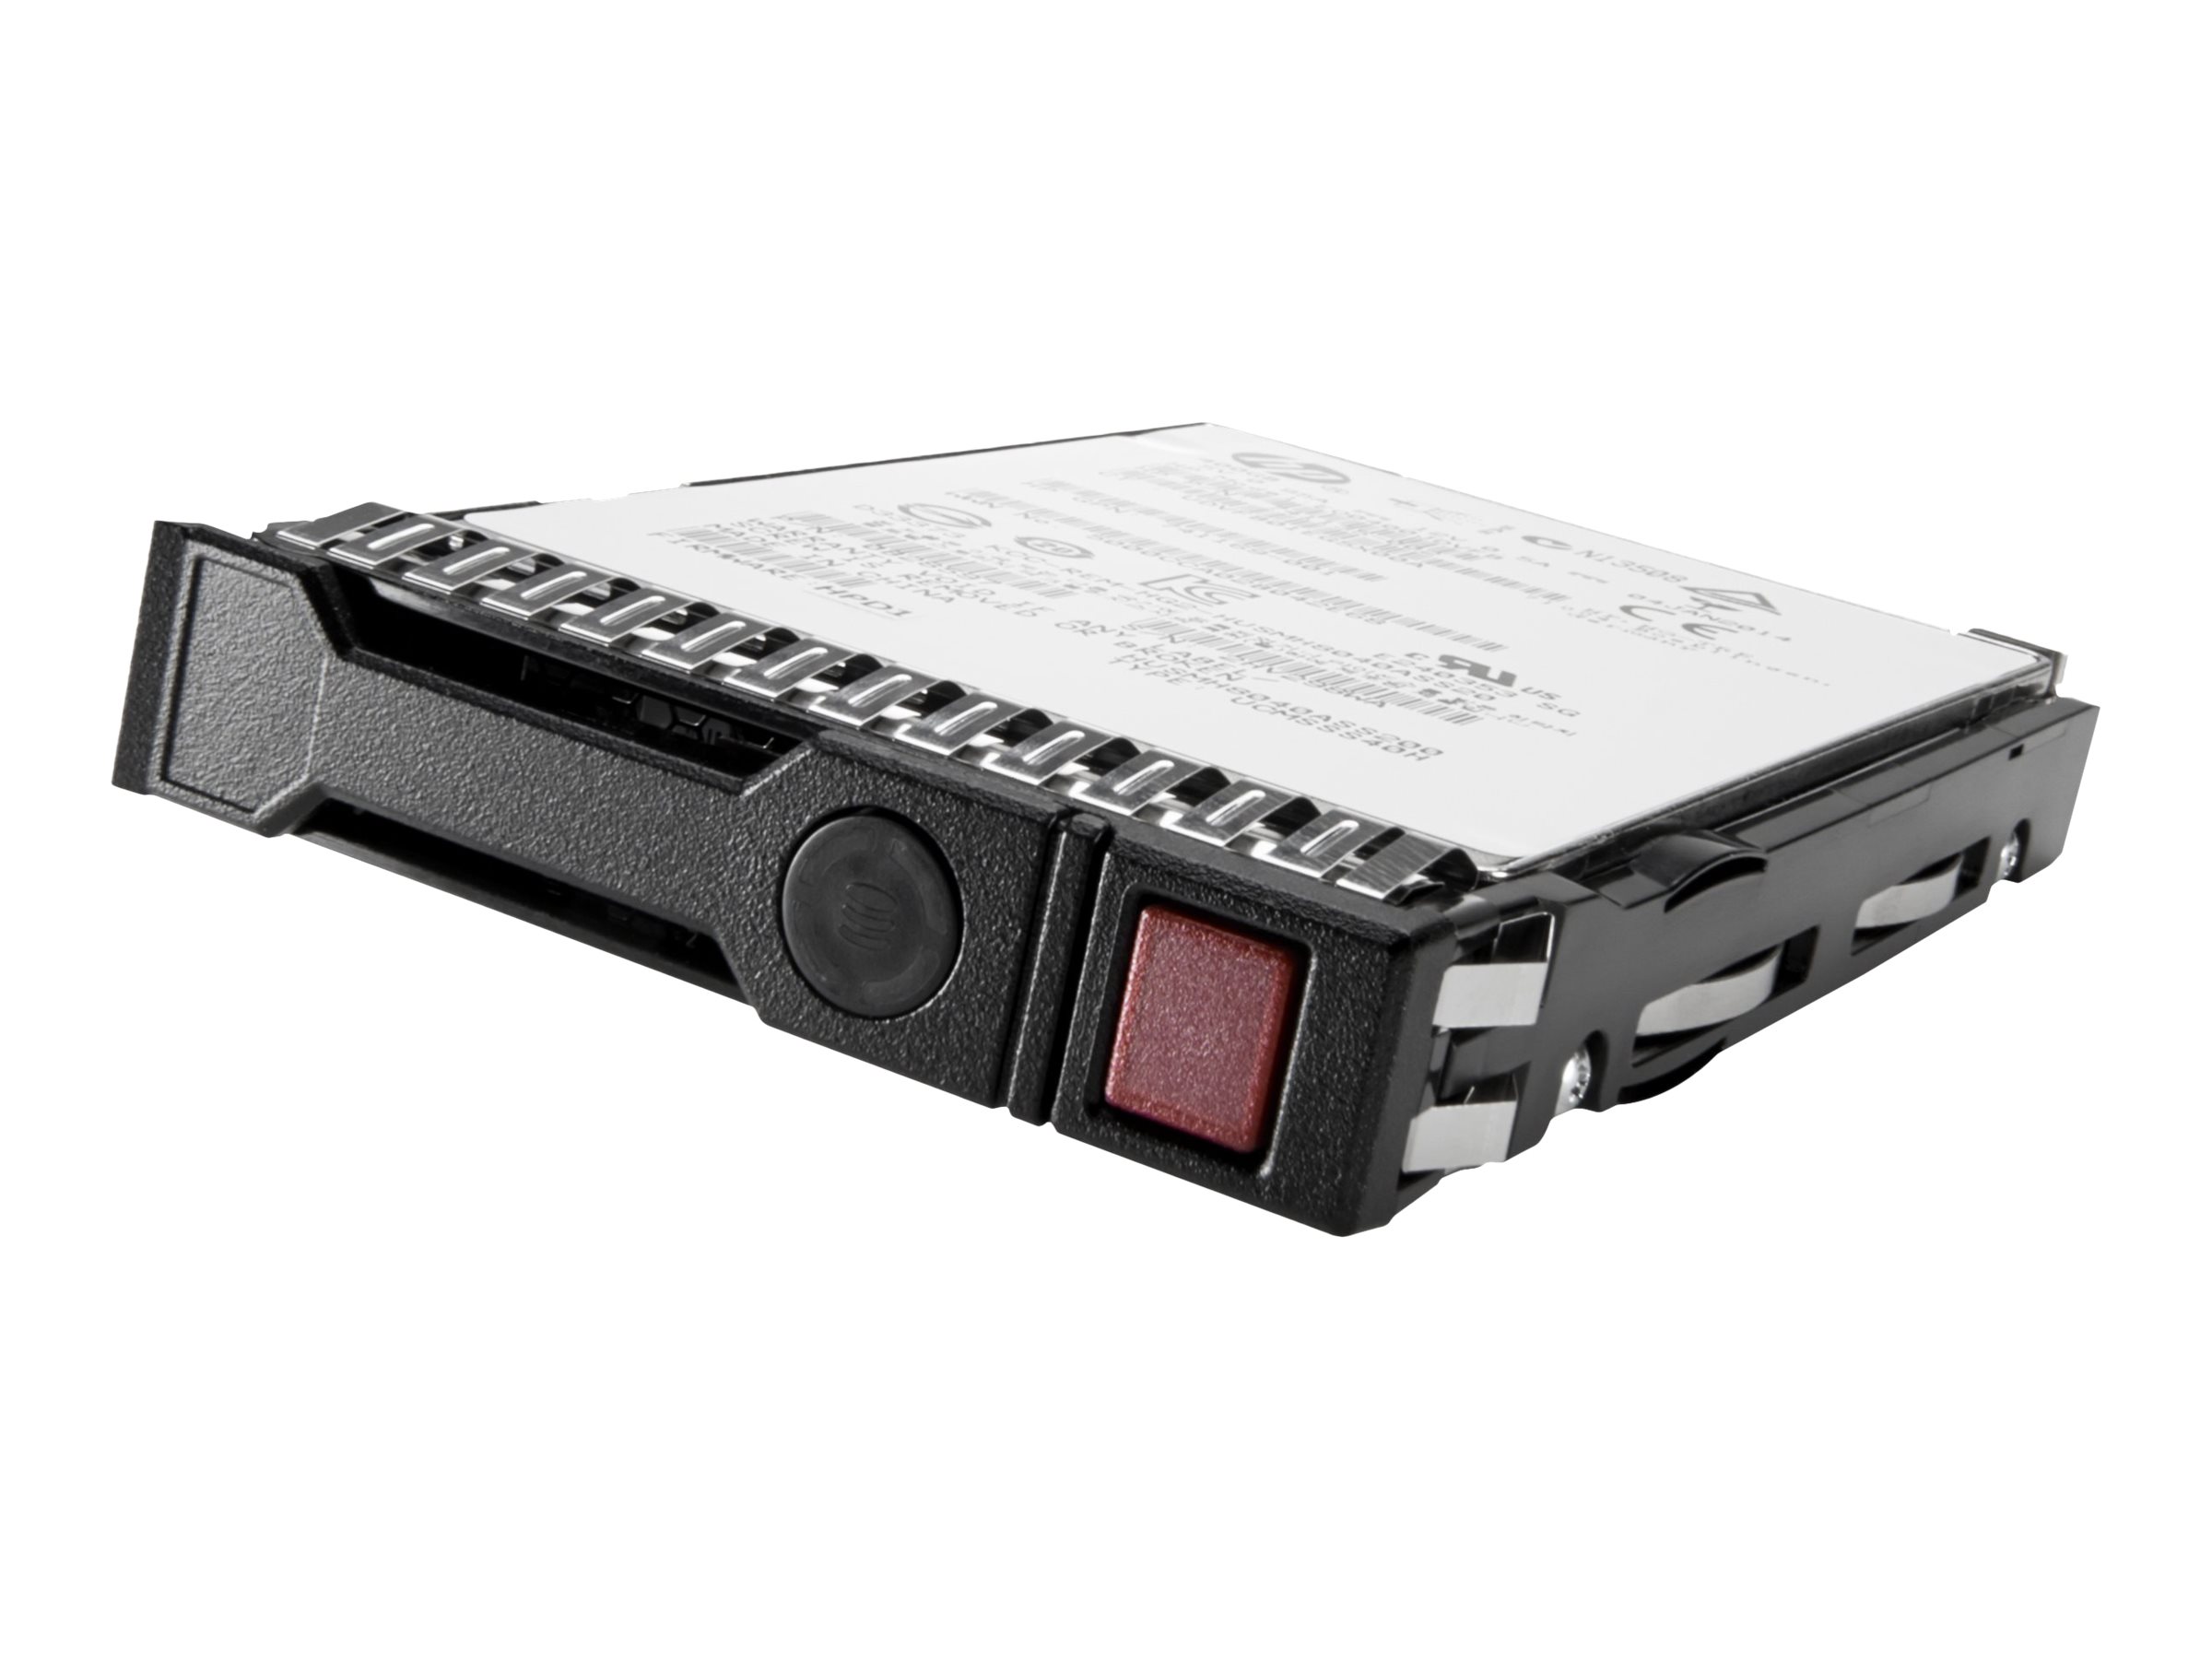 HP 500GB 3G 7.2K LFF 3.5inch Hot Plug SATA Midline HDD (458941-B21) - REFURB